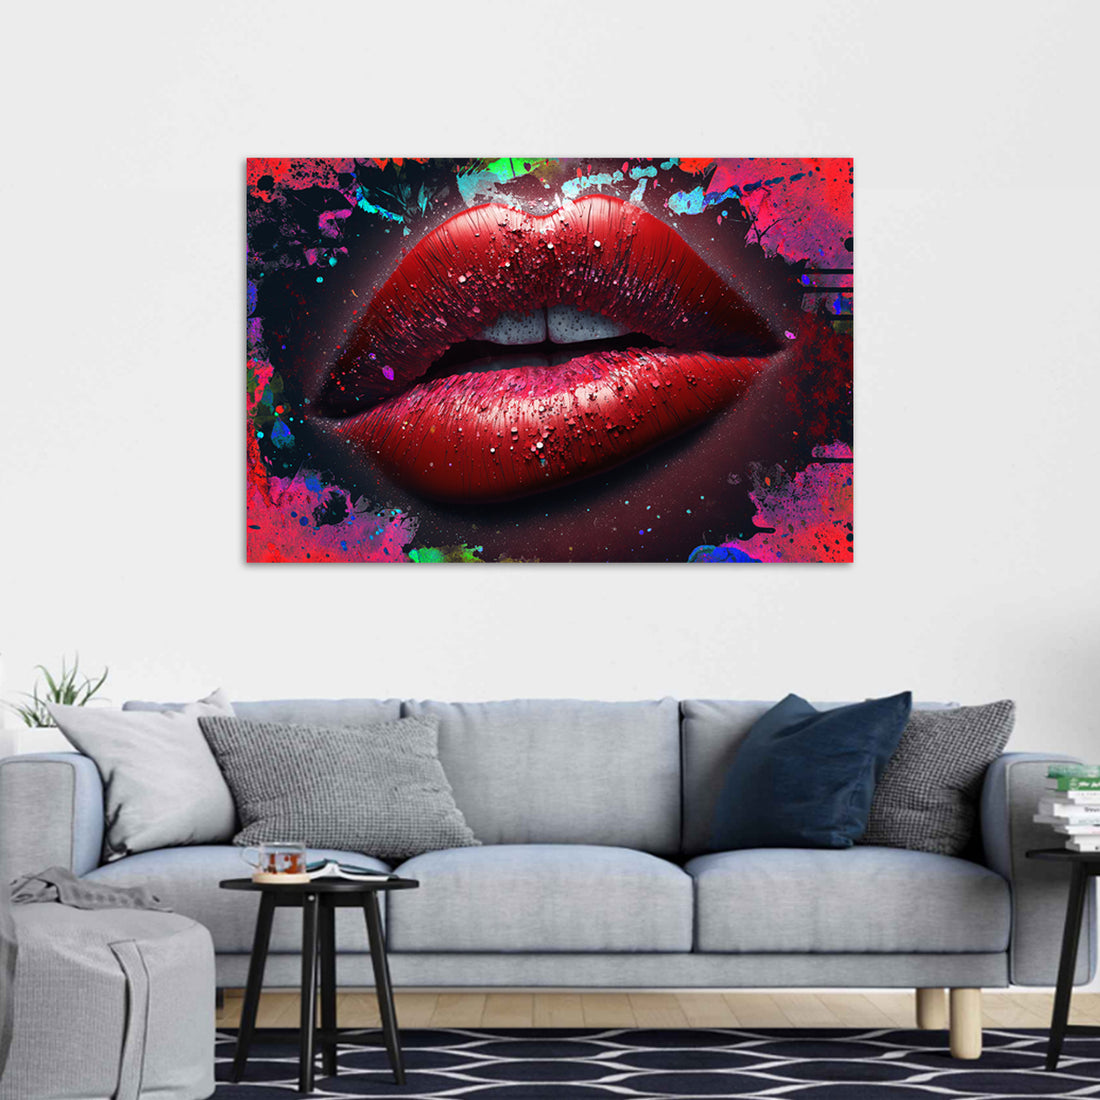 Wandbild Red Lips Abstract Pop Art